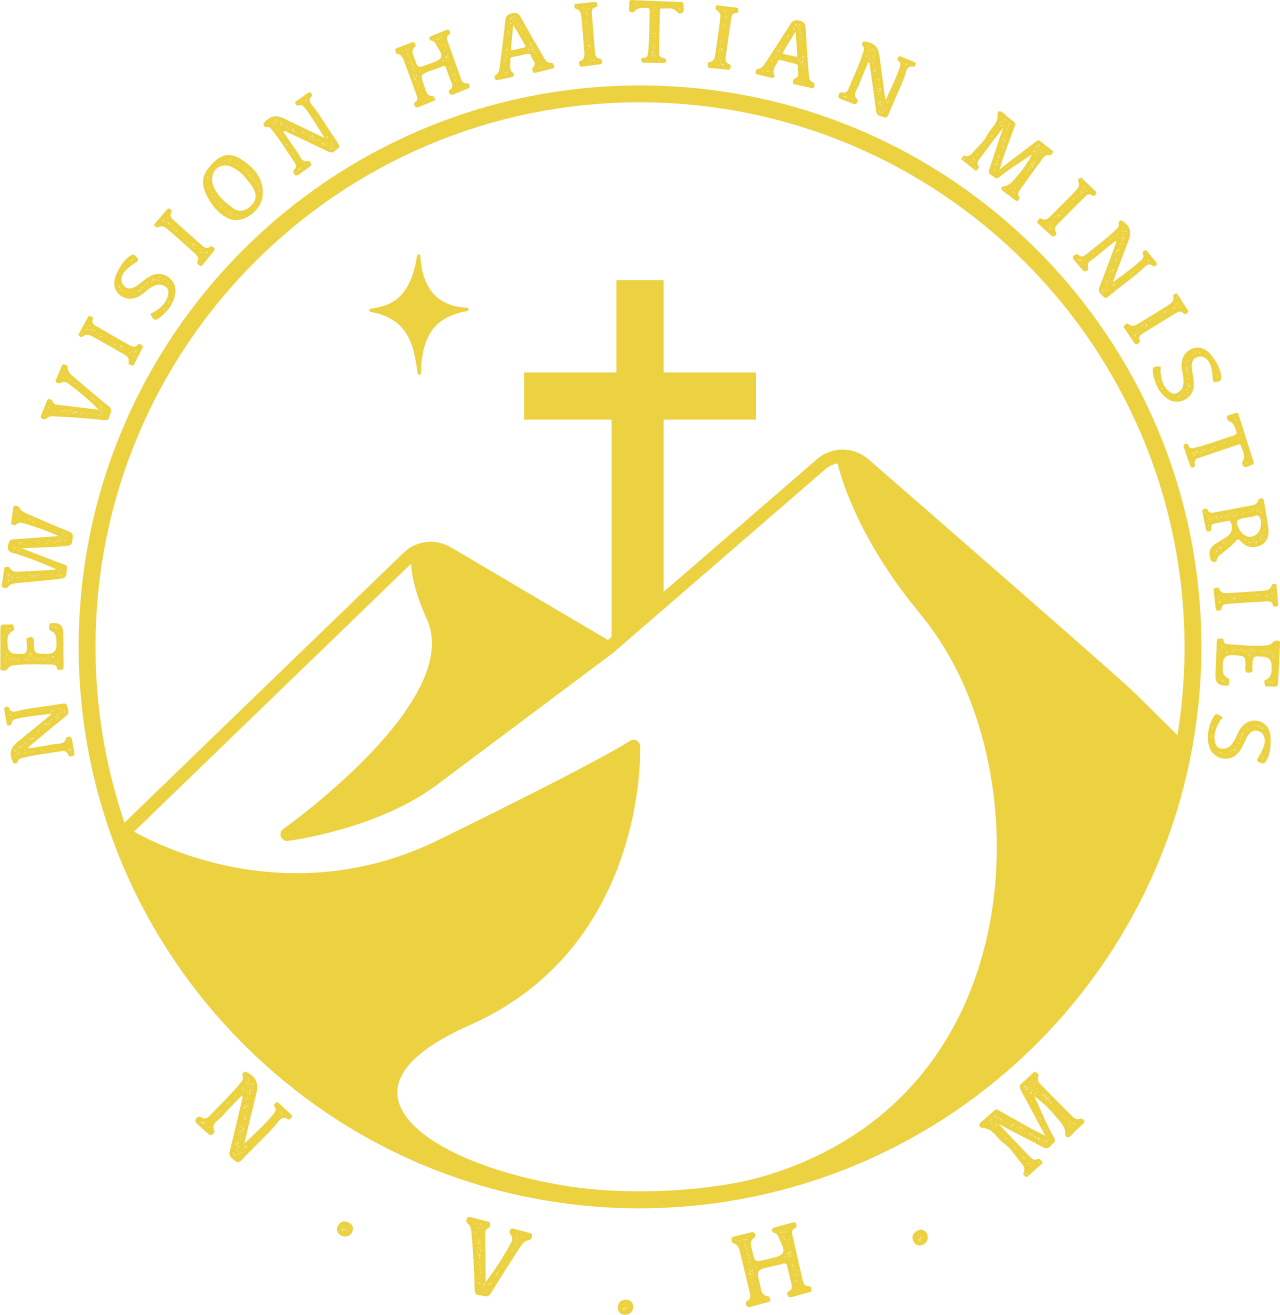 NEW VISION HAITIAN MINISTRIES's logo